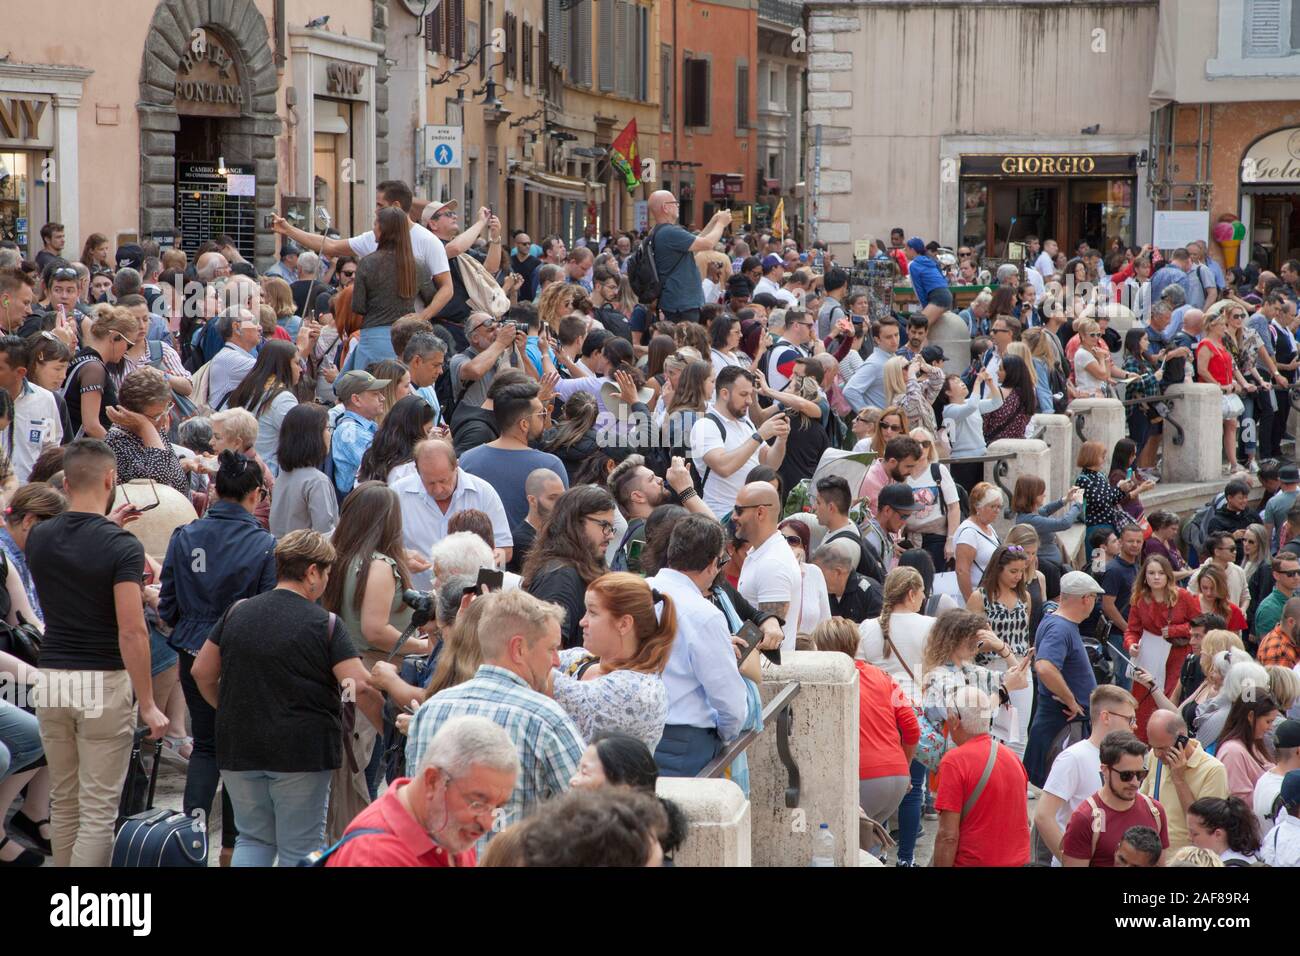 Des foules immenses à la Fontaine de Trevi à Rome prendre des autoportraits et jettent des pièces de monnaie dans la fontaine de la chance. Maintenant la sécurité d'arrêter les personnes de siéger Banque D'Images